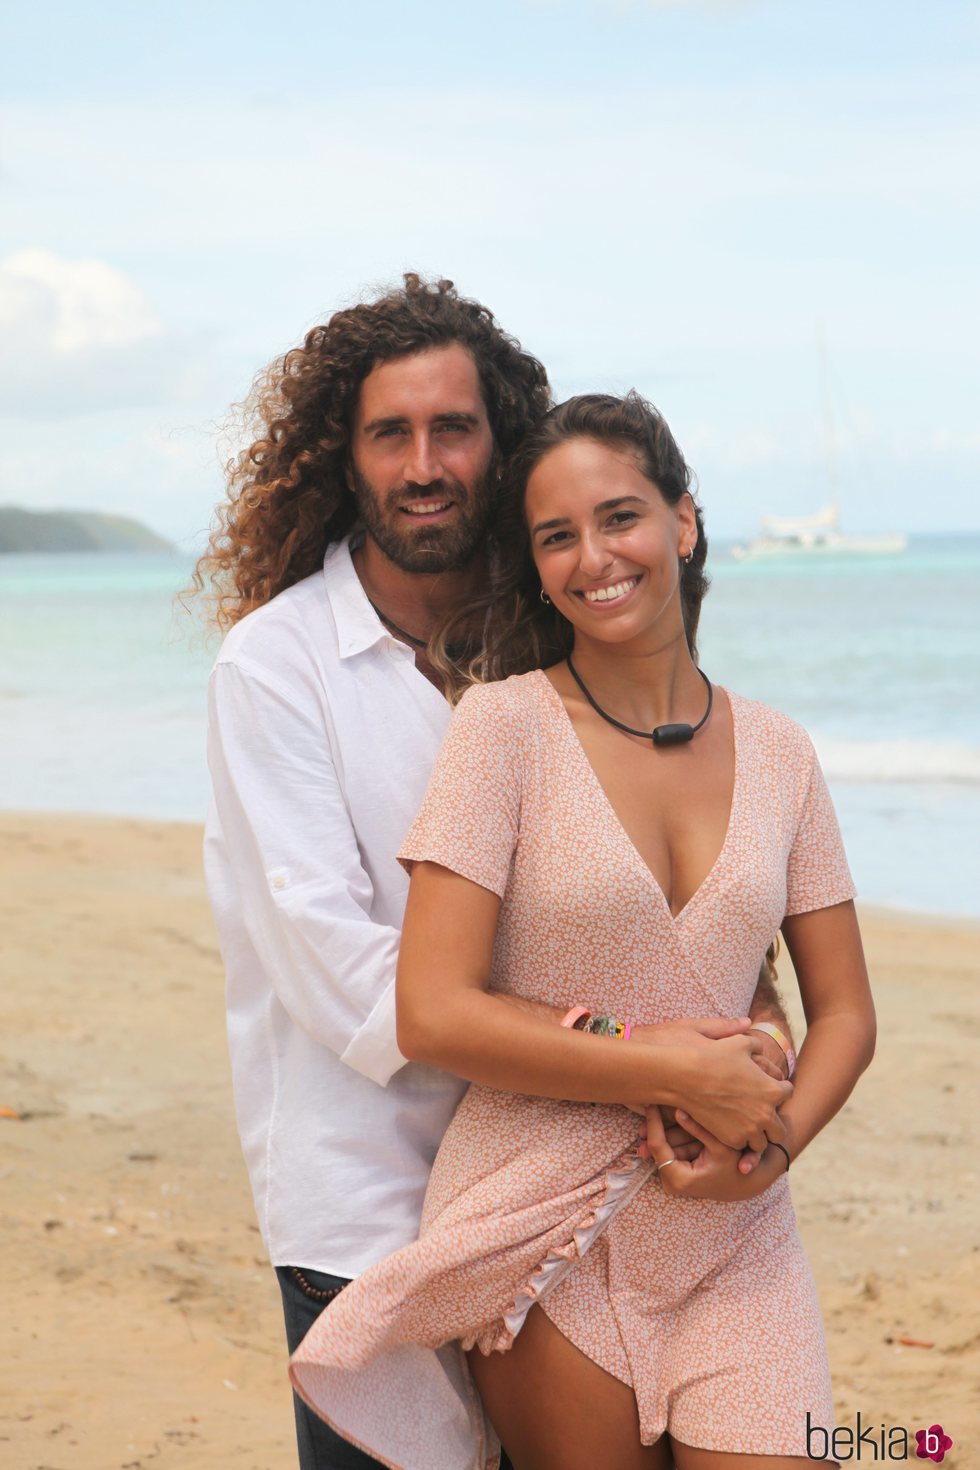 Raúl y Claudia, pareja de 'La isla de las tentaciones 3'